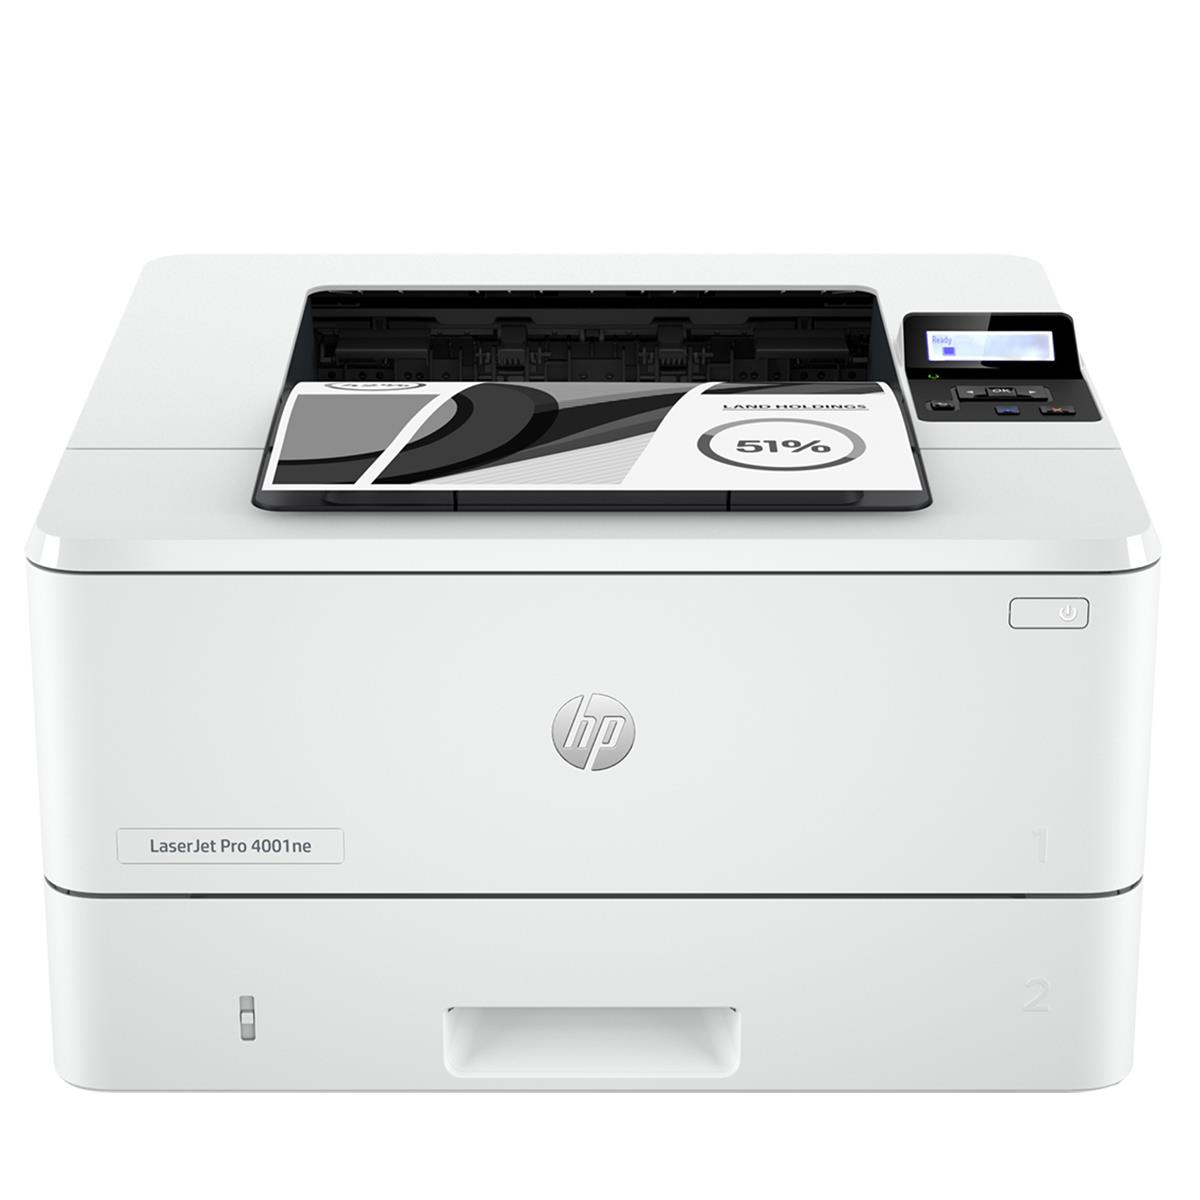 Image of HP LaserJet Pro 4001ne Laser Printer with 3-Months Instant Ink